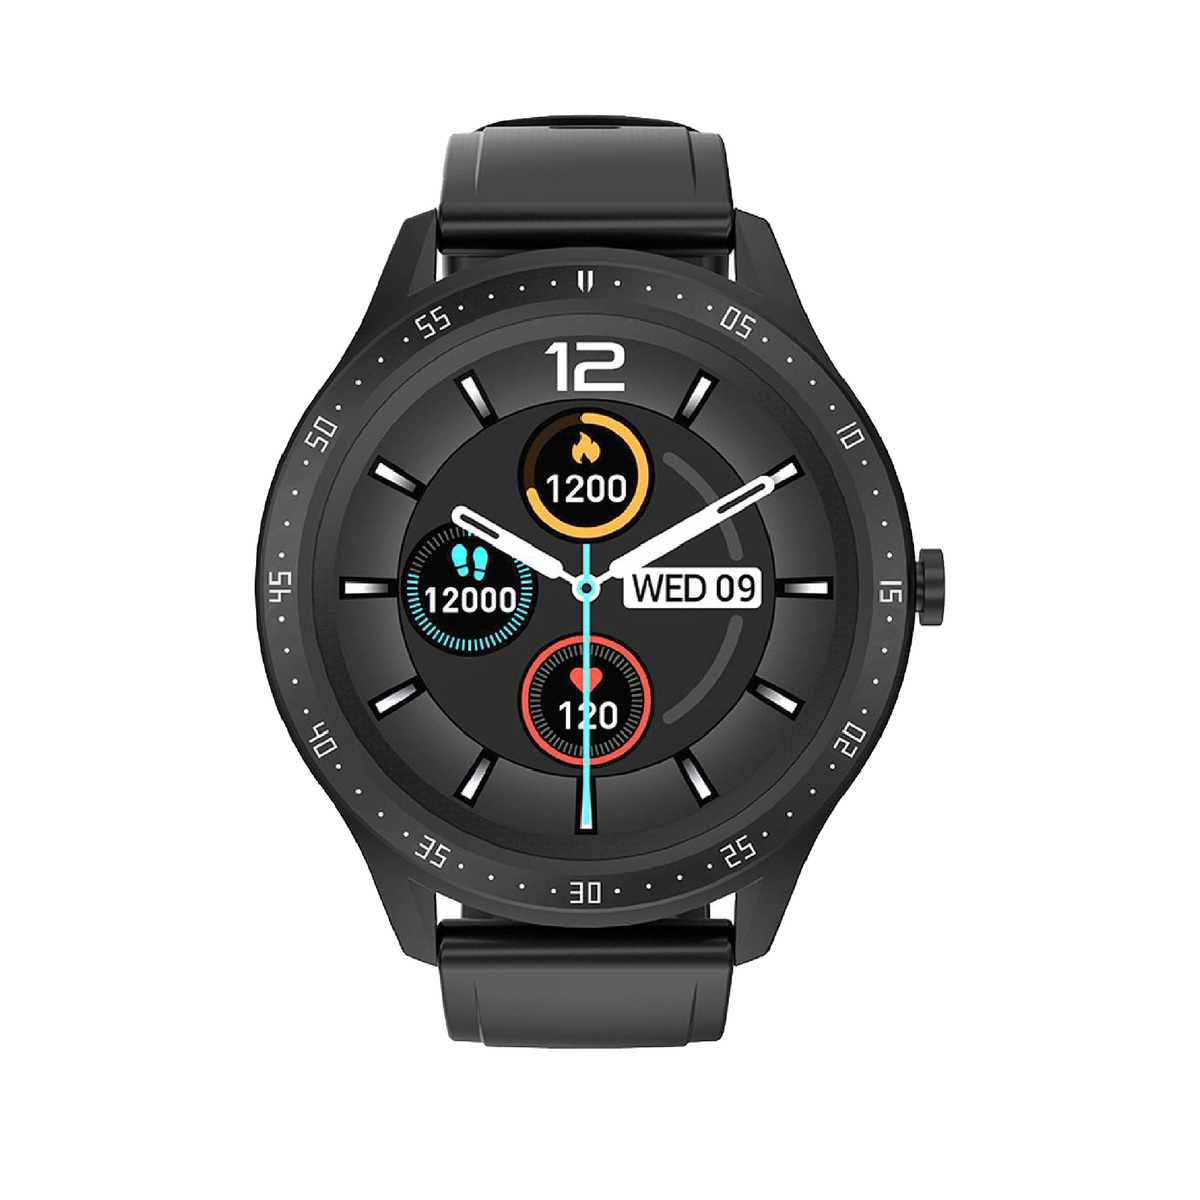 Porodo PD-VORTEX-BK Vortex Smart Watch - Black